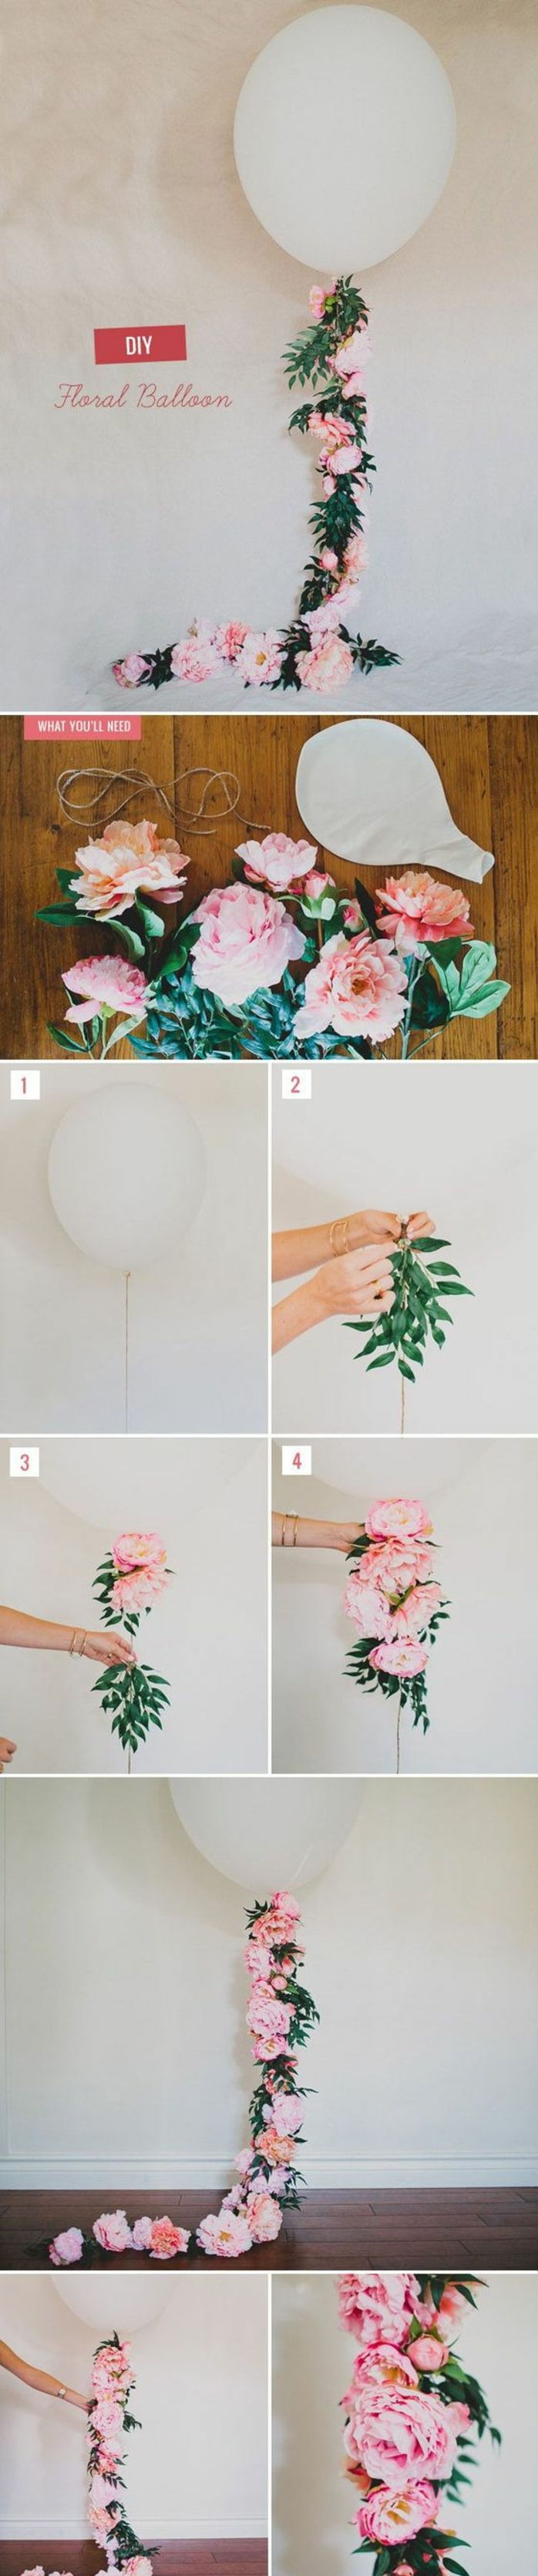 pomysły rzemieślnicze wiosna, biały balon, kwiaty, gałęzie